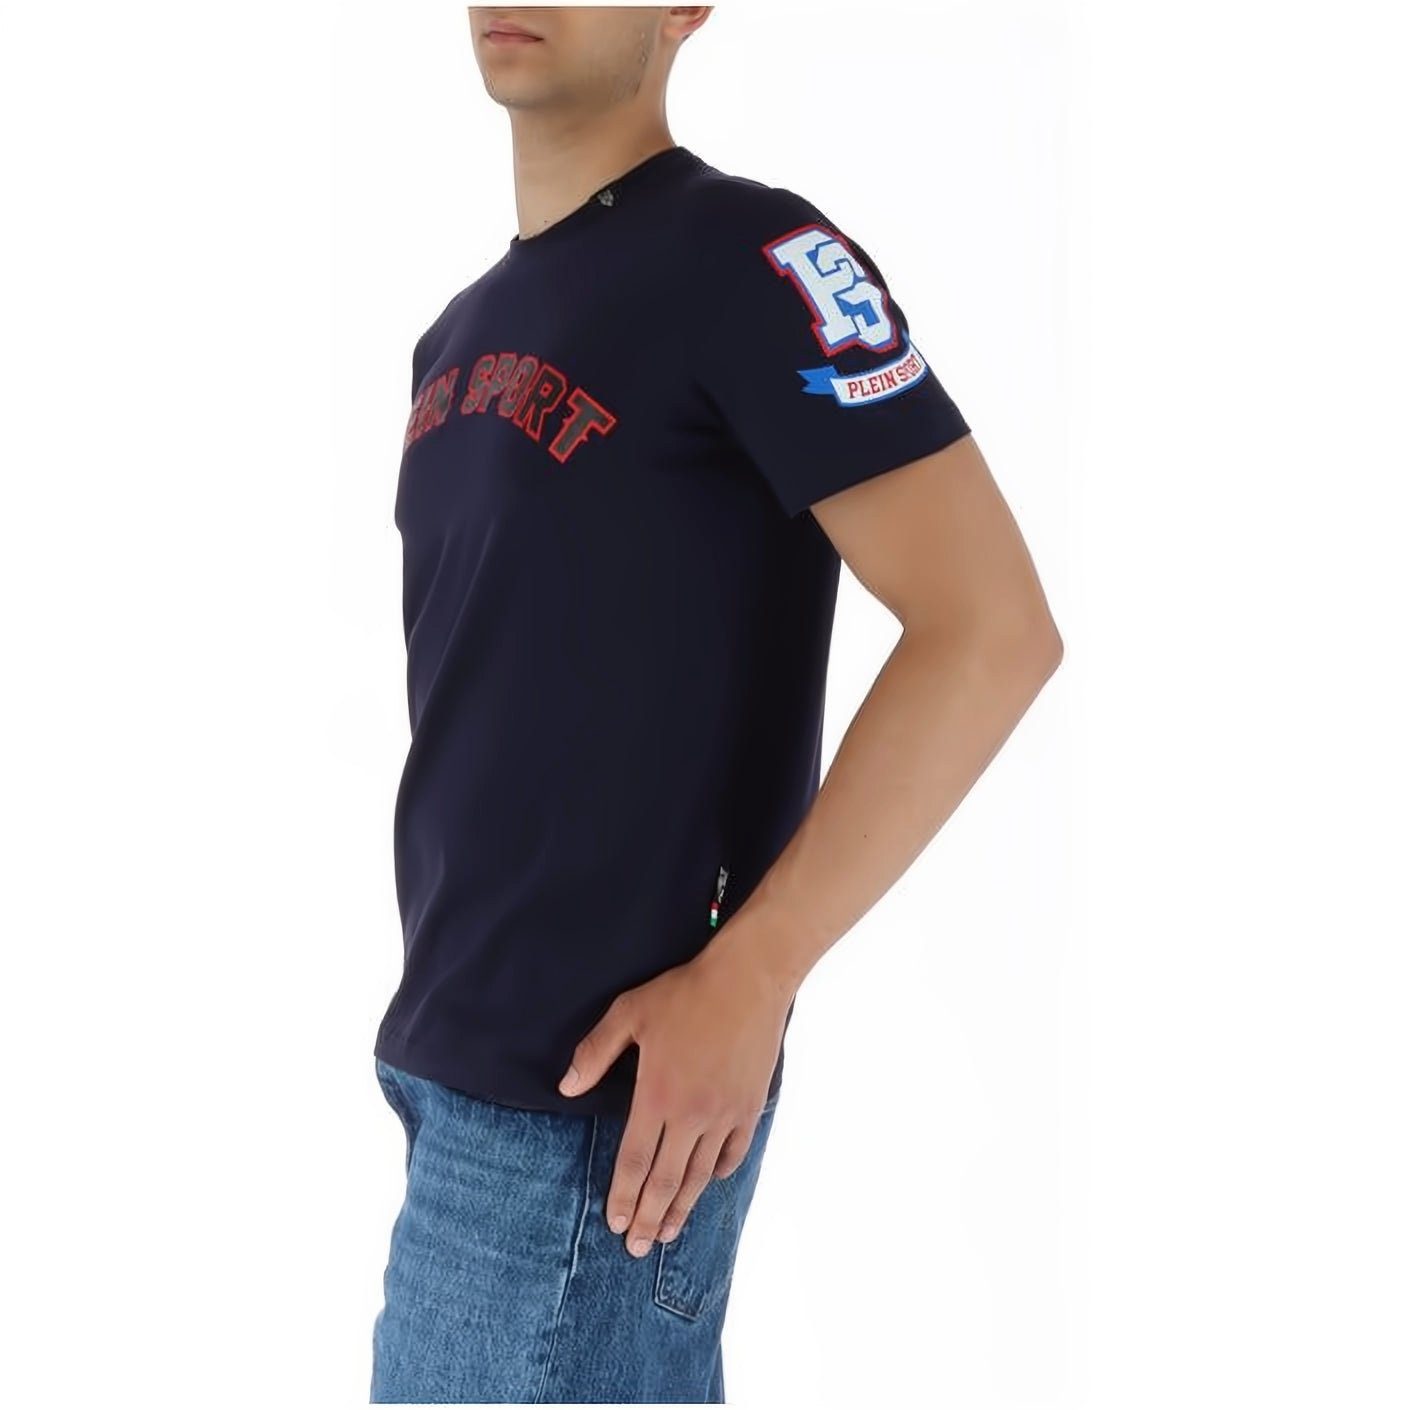 Tragekomfort, Farbauswahl Stylischer vielfältige NECK T-Shirt SPORT hoher Look, ROUND PLEIN